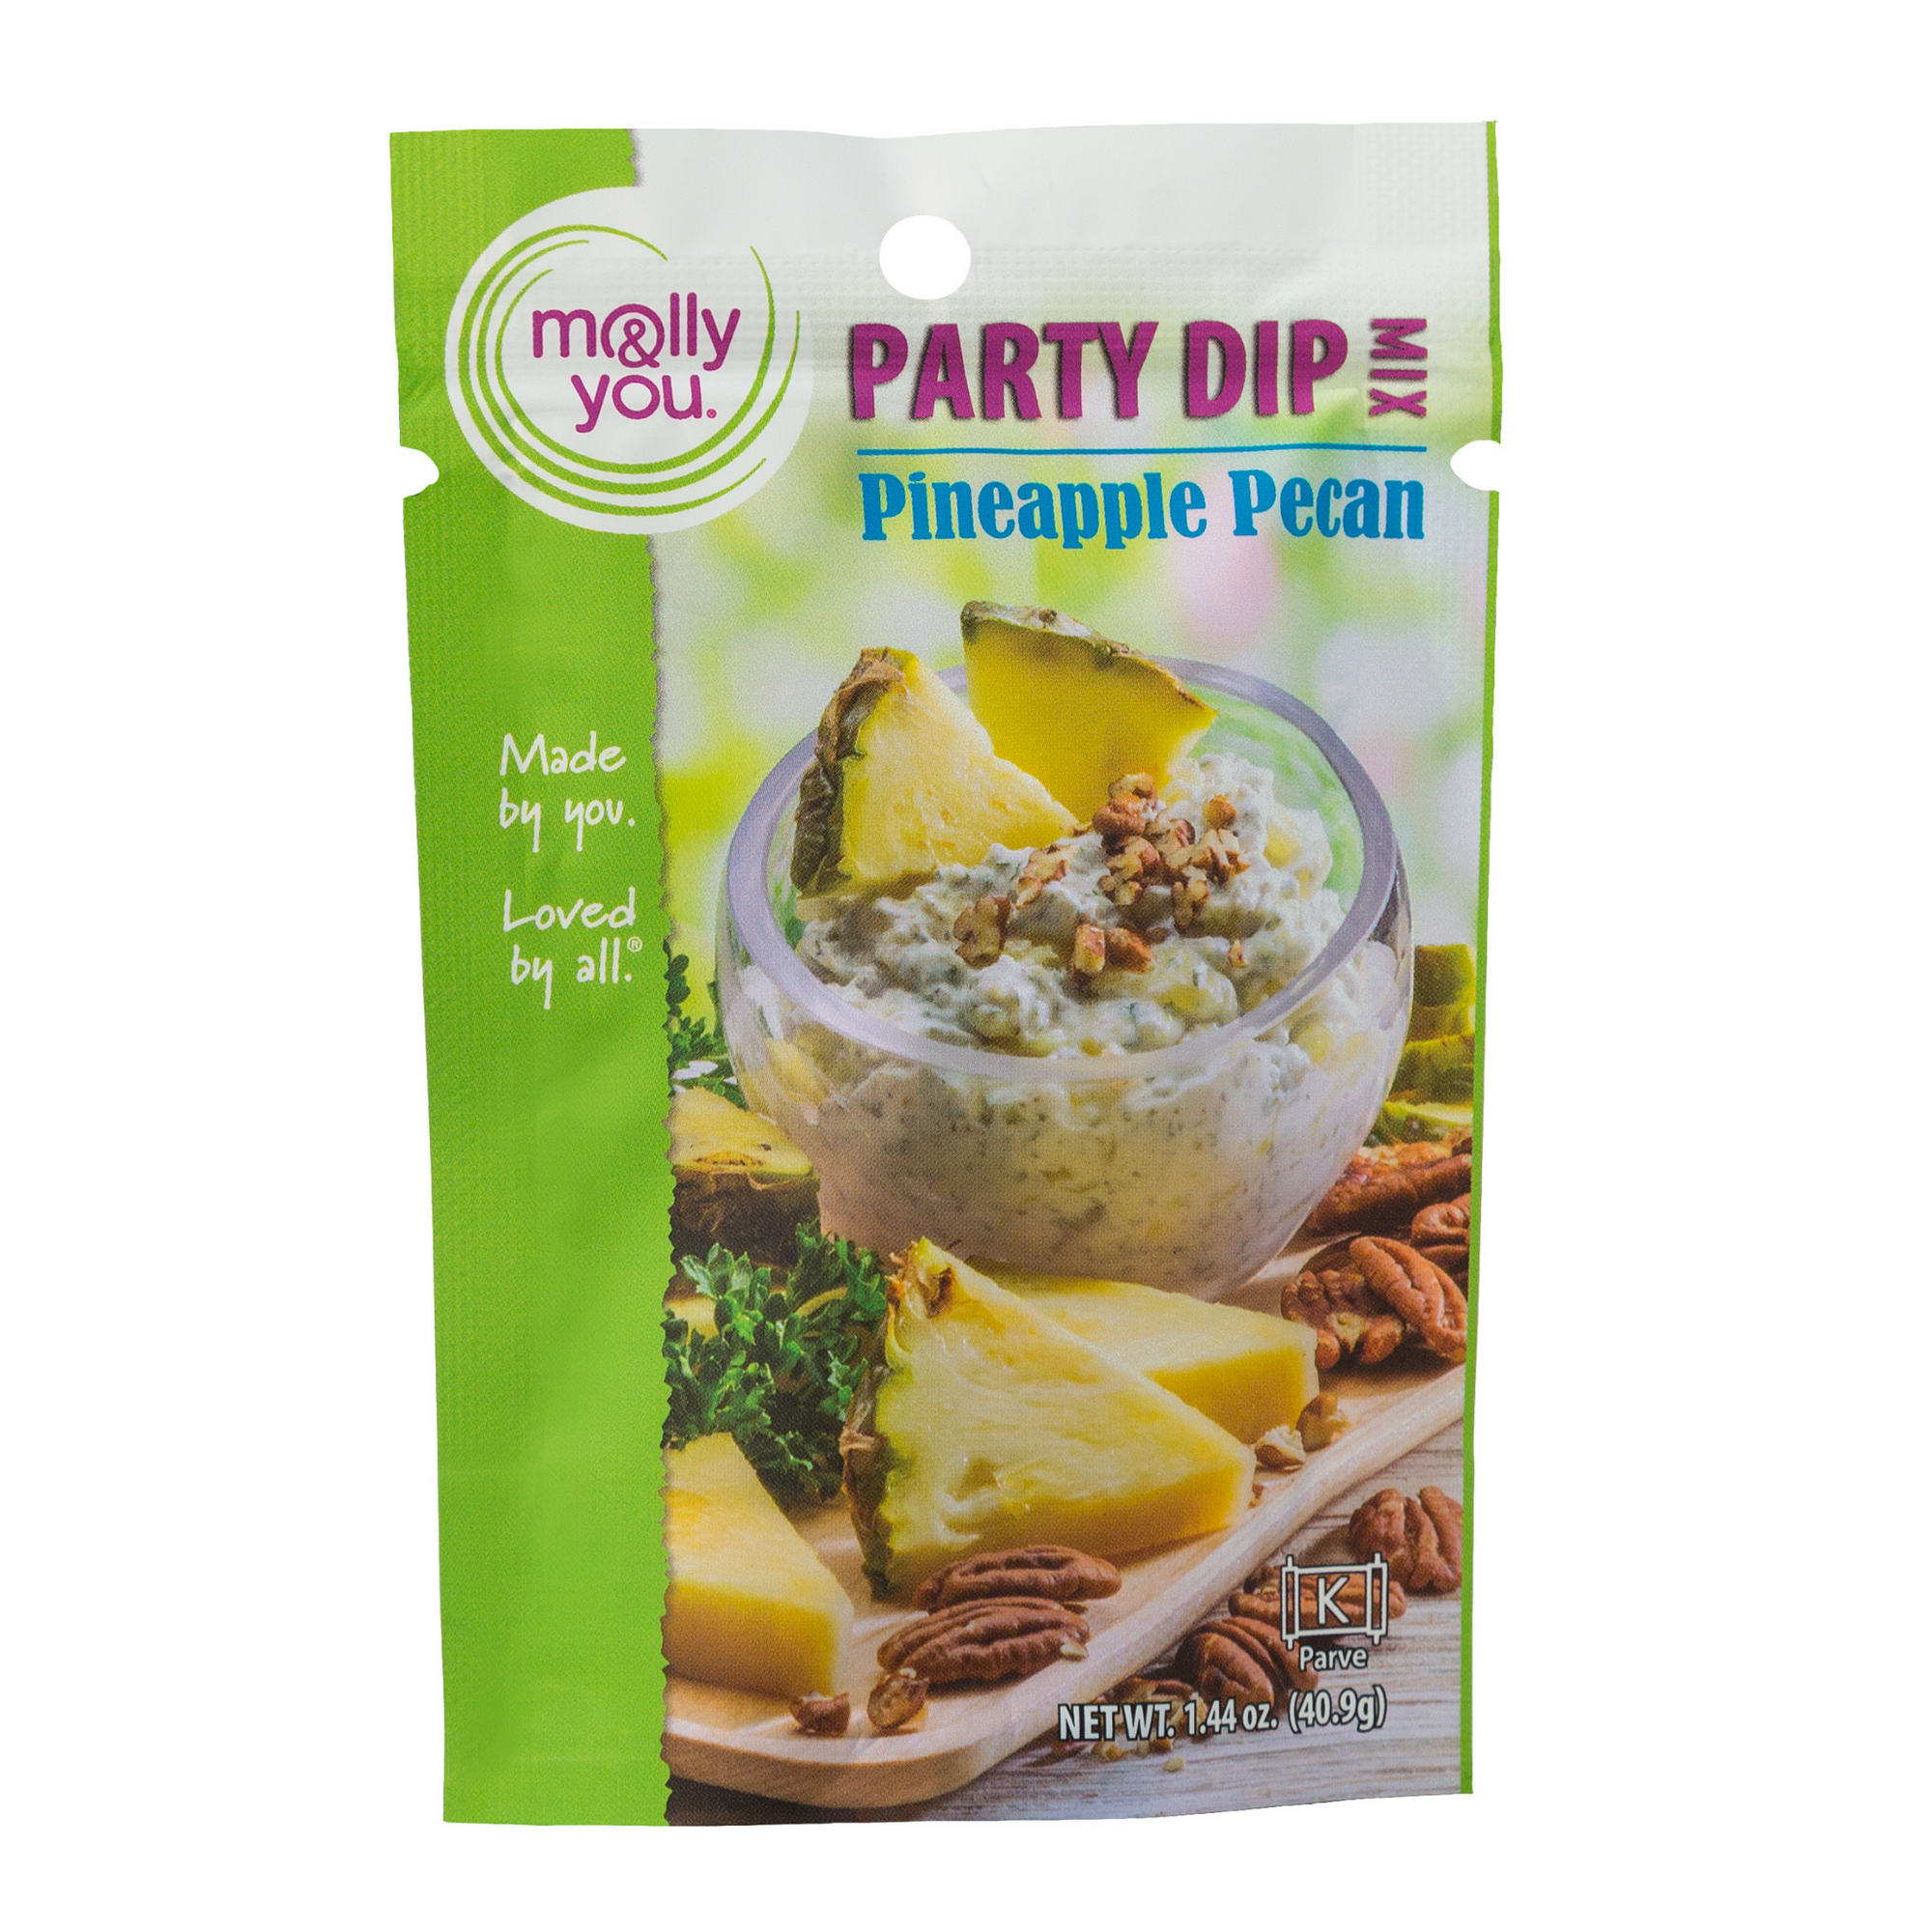 Pineapple Pecan Party Dip Mix